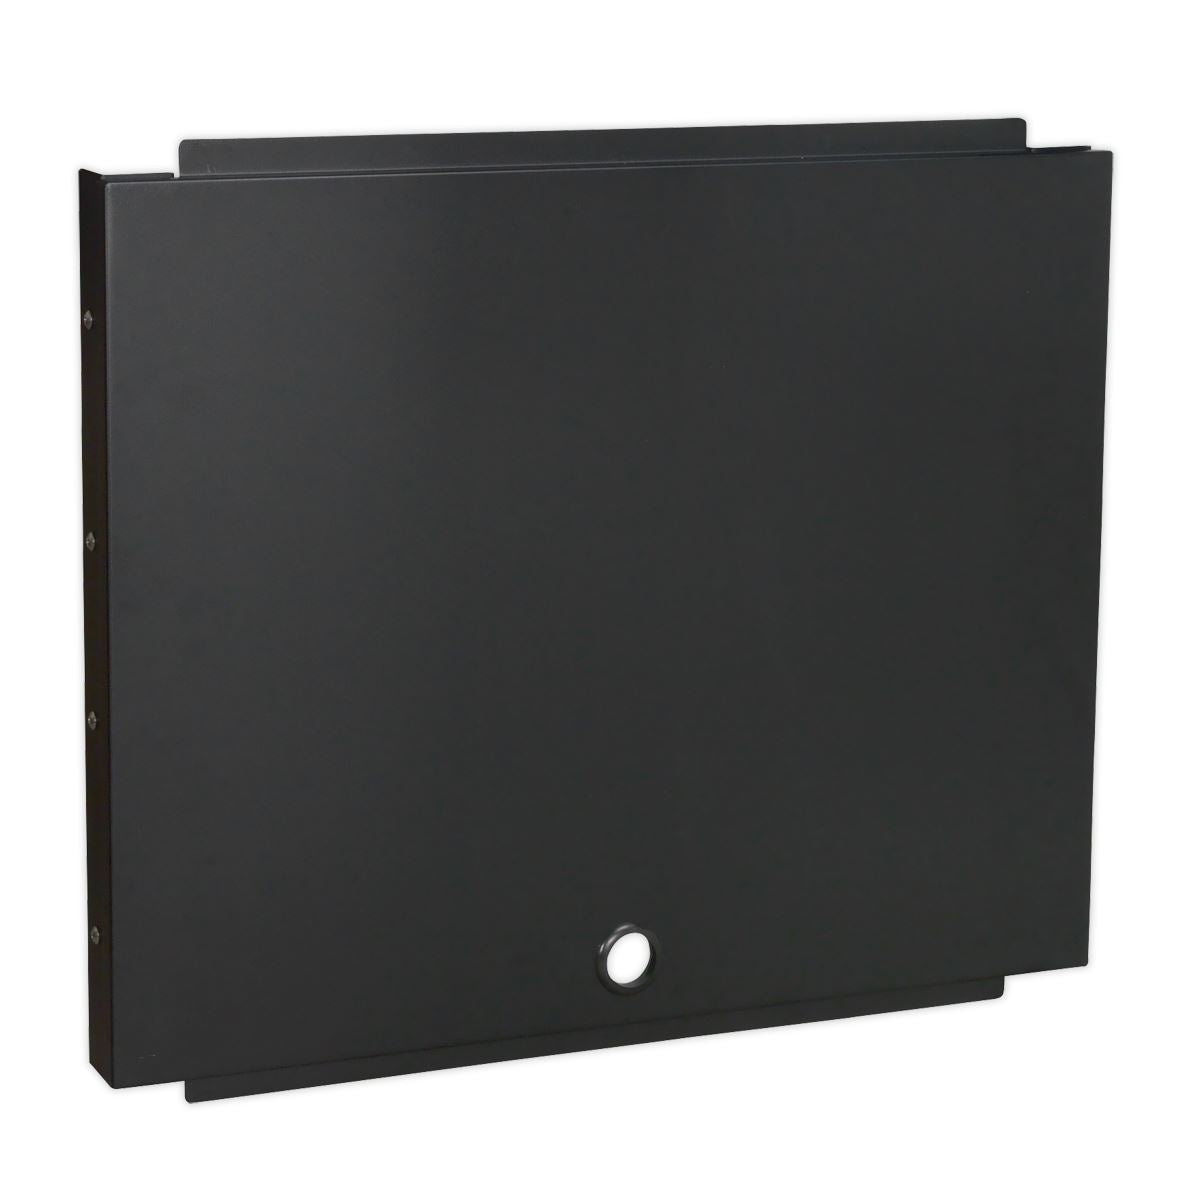 Sealey Premier Premier 3.3m Storage System - Pressed Wood Worktop